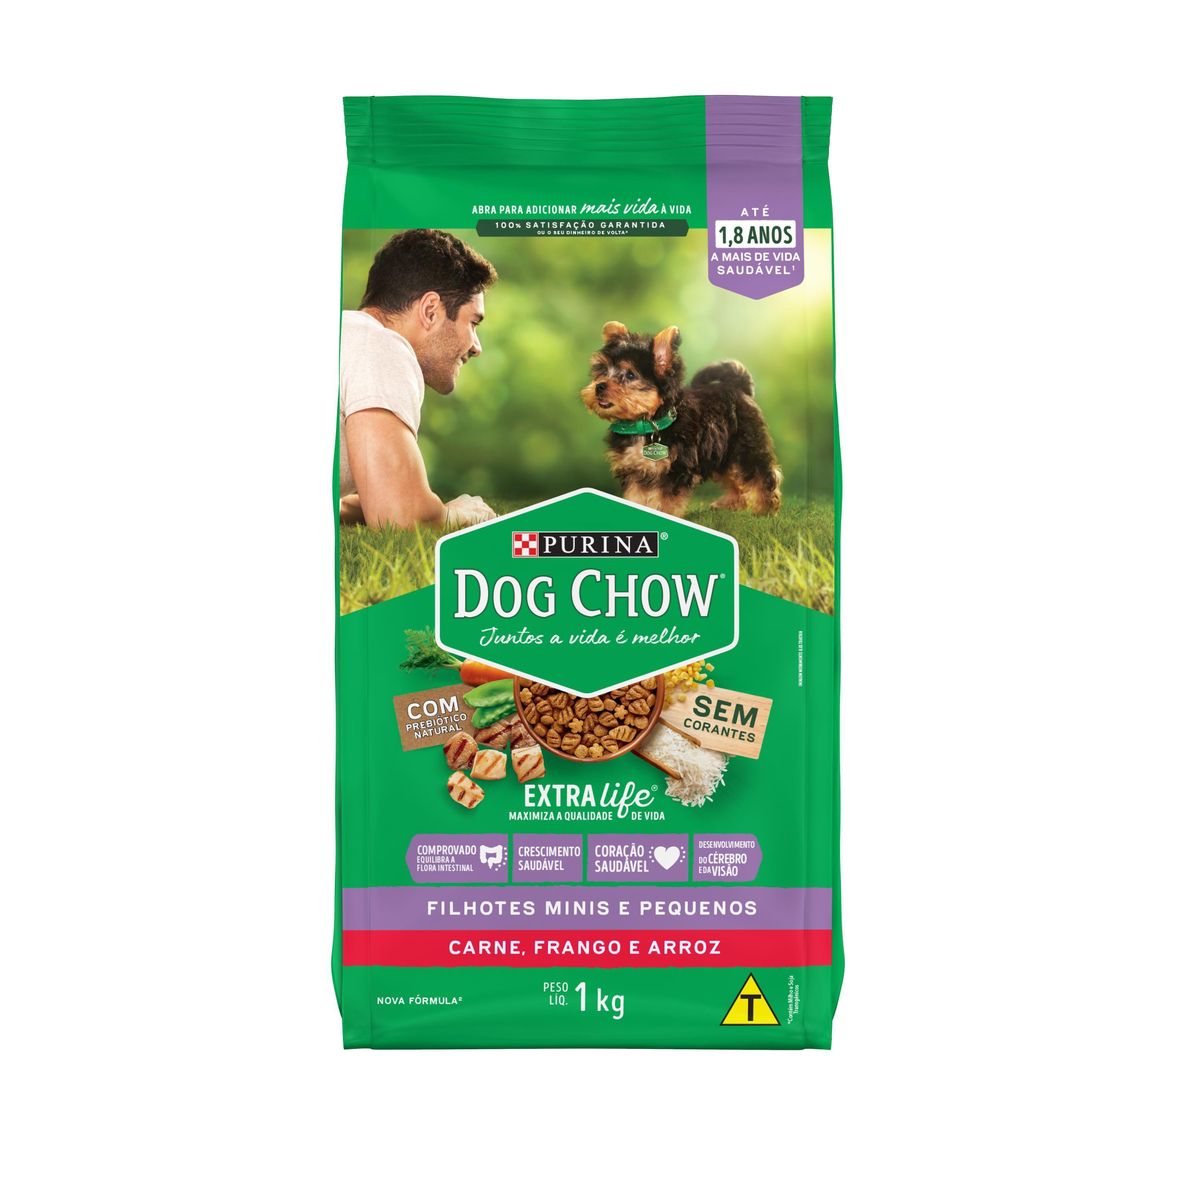 Alimento Dog Chow Cães Filhotes Minis e Pequenos Frango e Arroz 1kg